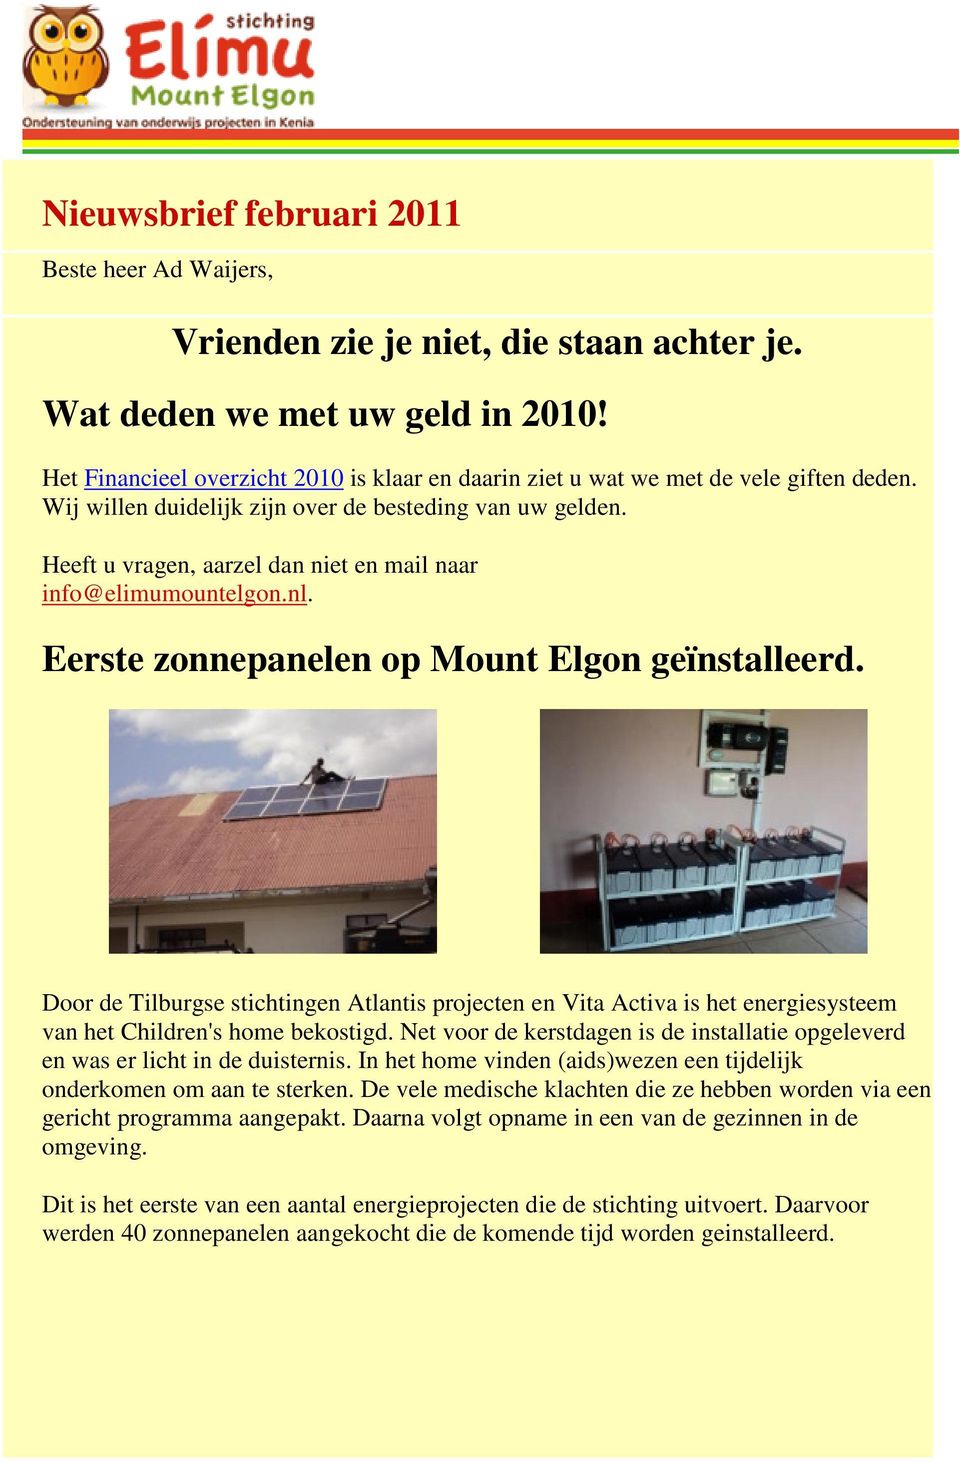 Heeft u vragen, aarzel dan niet en mail naar info@elimumountelgon.nl. Eerste zonnepanelen op Mount Elgon geïnstalleerd.